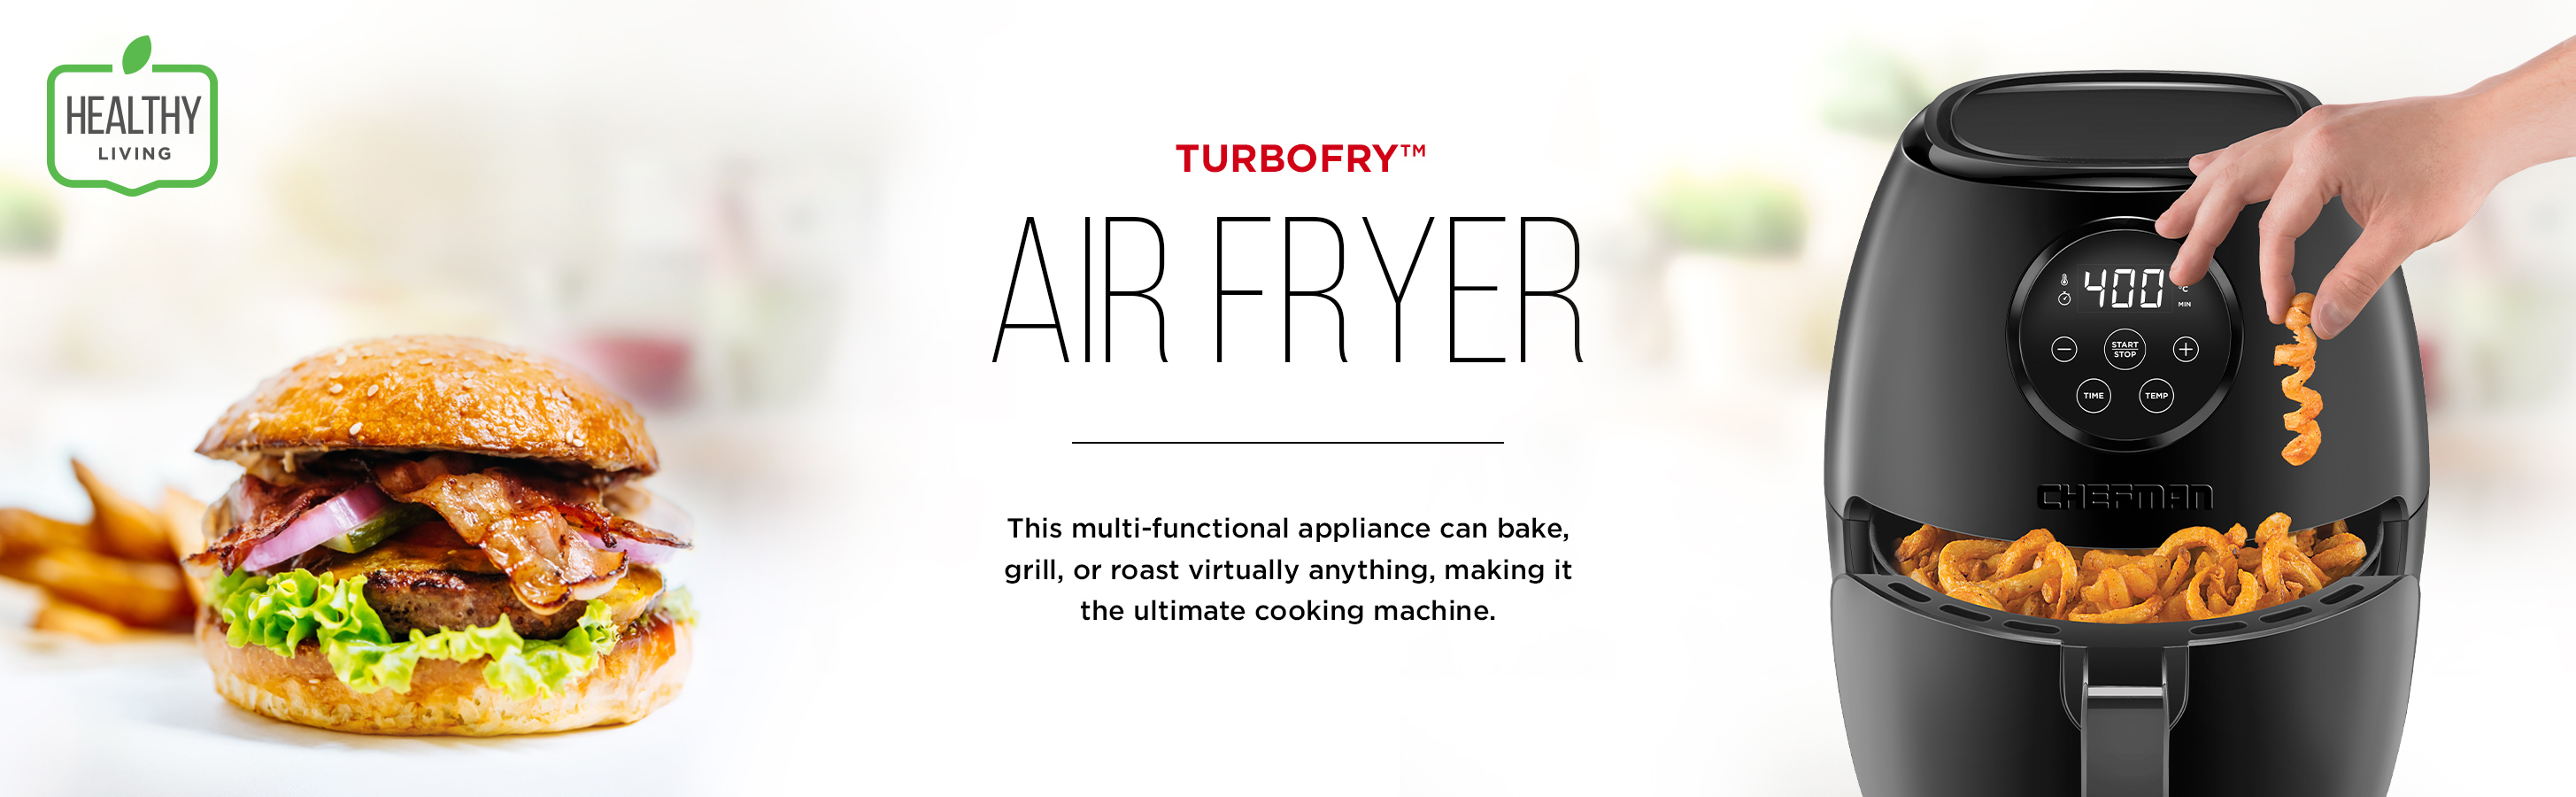 Chefman 3.5-Liter Matte Digital TurboFry Air Fryer Review